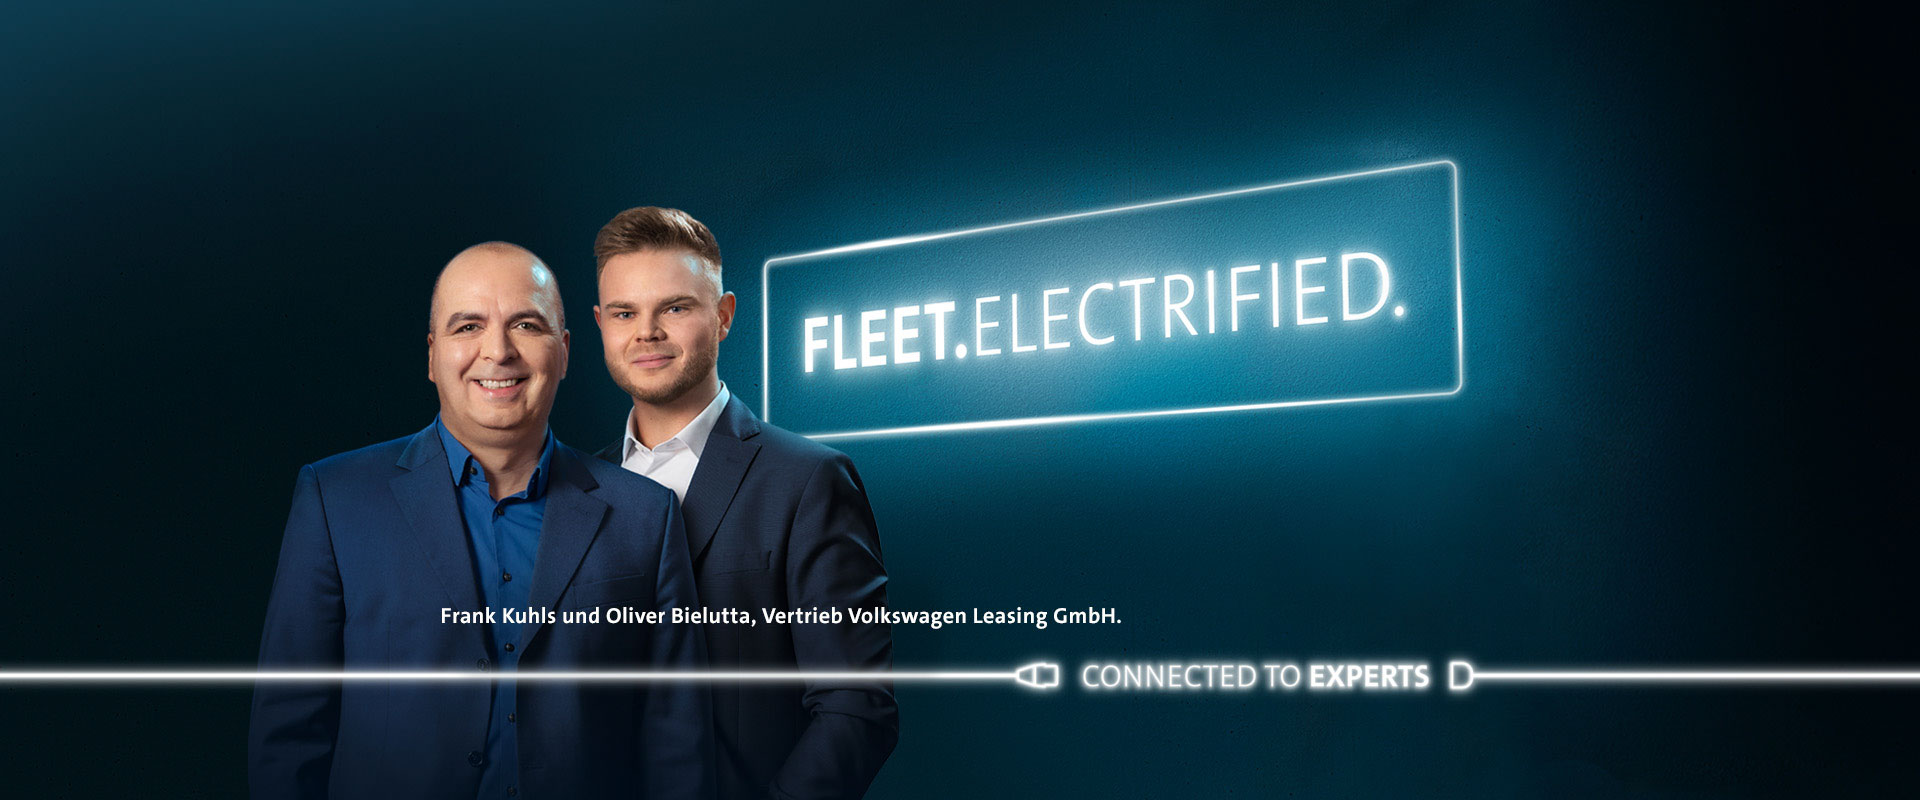 Frank Kuhls und Oliver Bielutta, Vertrieb Volkswagen Leasing GmbH.